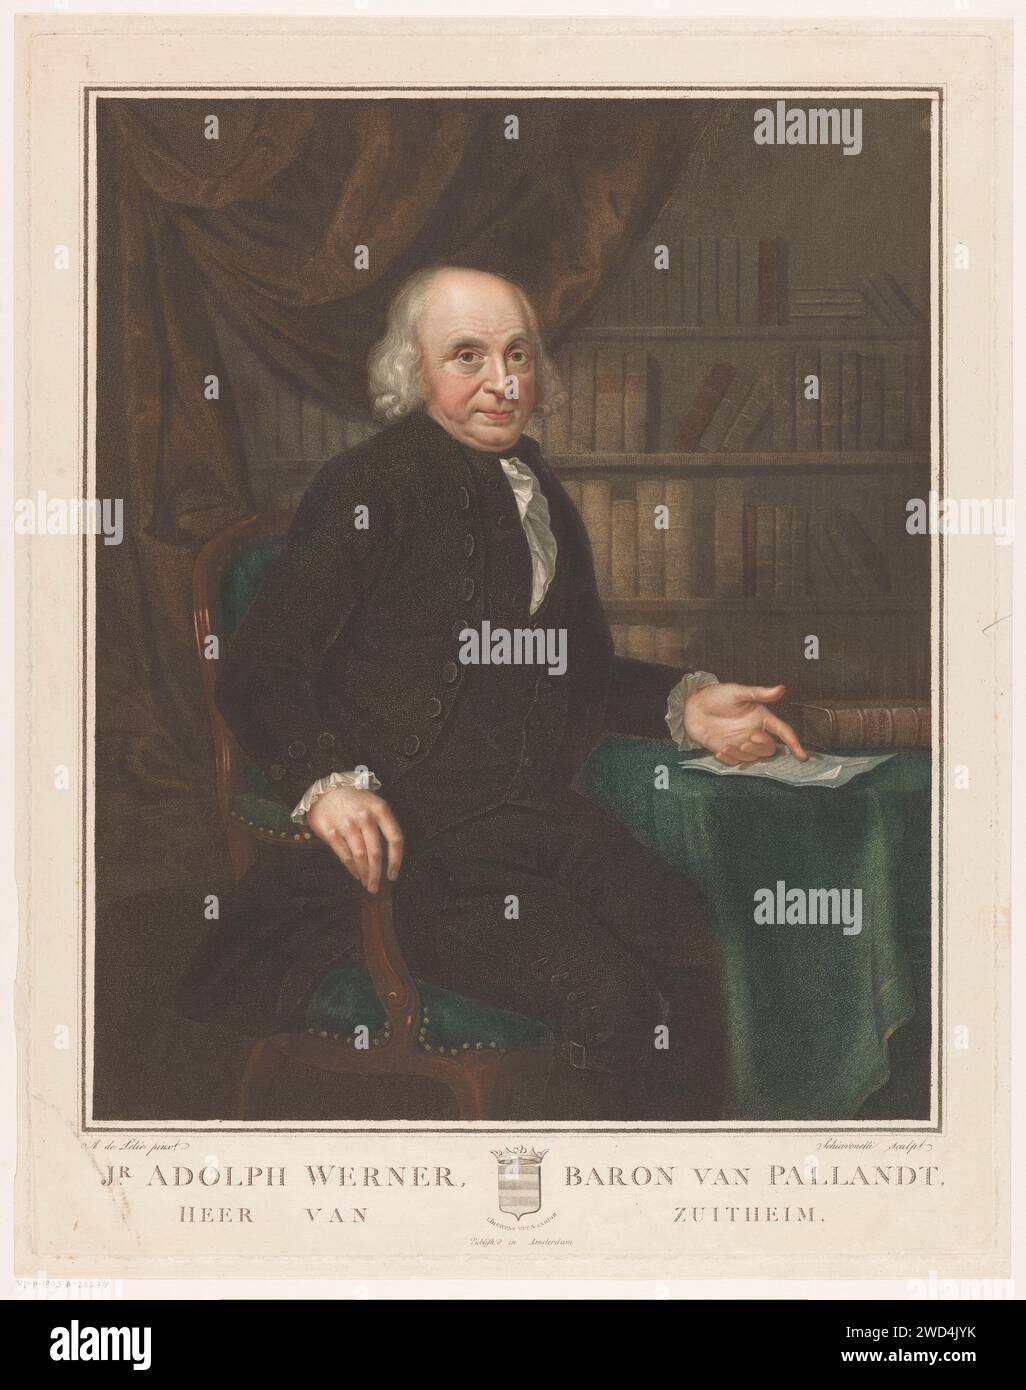 Portrait d'Adolph Werner van Pallandt à Zuthem, Drost van IJsselmuiden, Luigi Schiavonetti, d'après Adriaan de Lelie, 1790 - 1810 estampe Amsterdam gravure sur papier / gravure de personnages historiques Banque D'Images